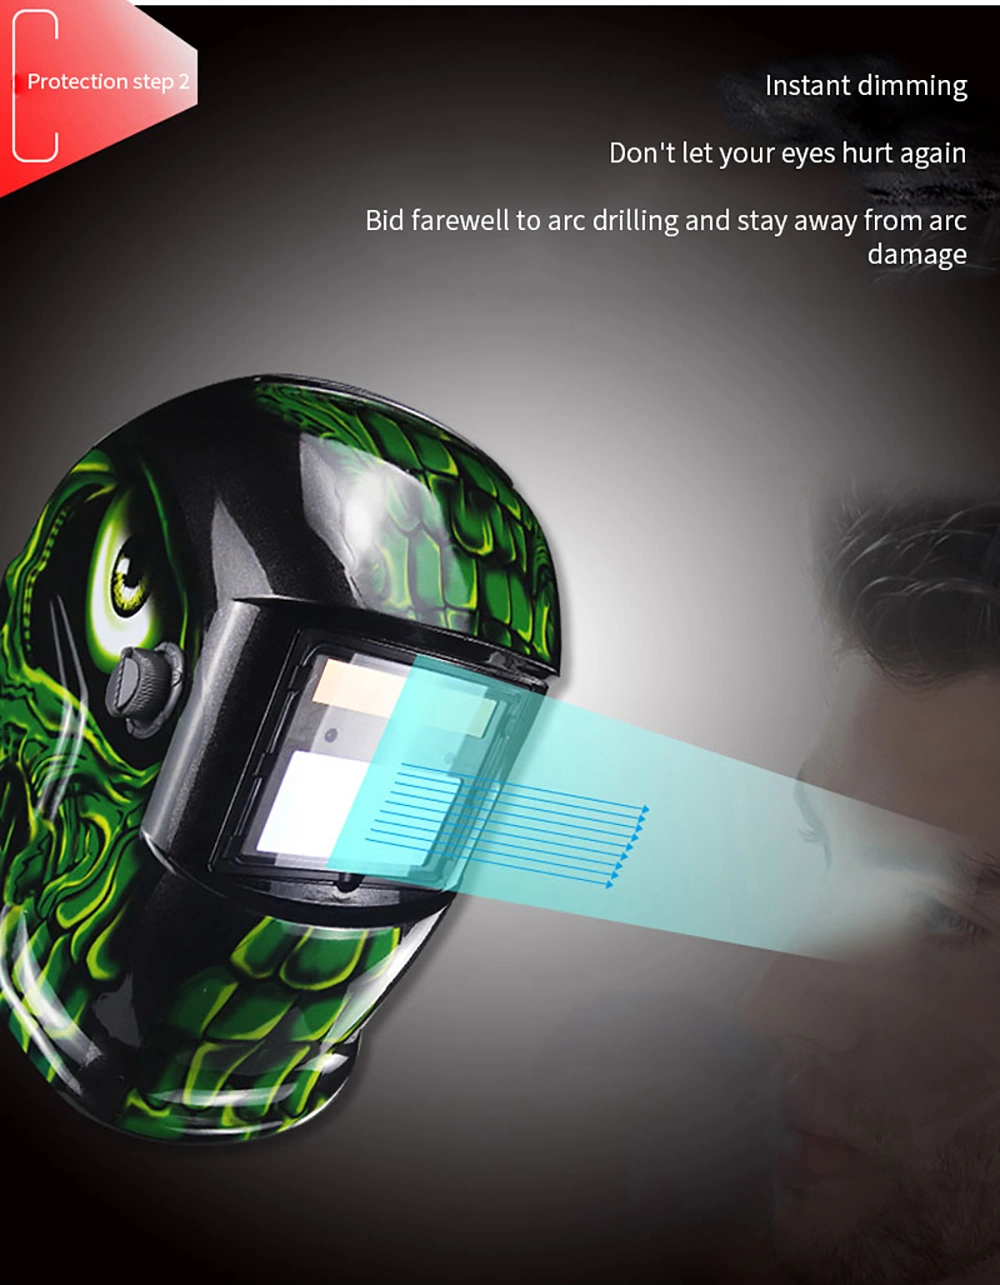 Certificated True Color Auto Darkening Solar Powered Welding Helmet with Grind Weld Function